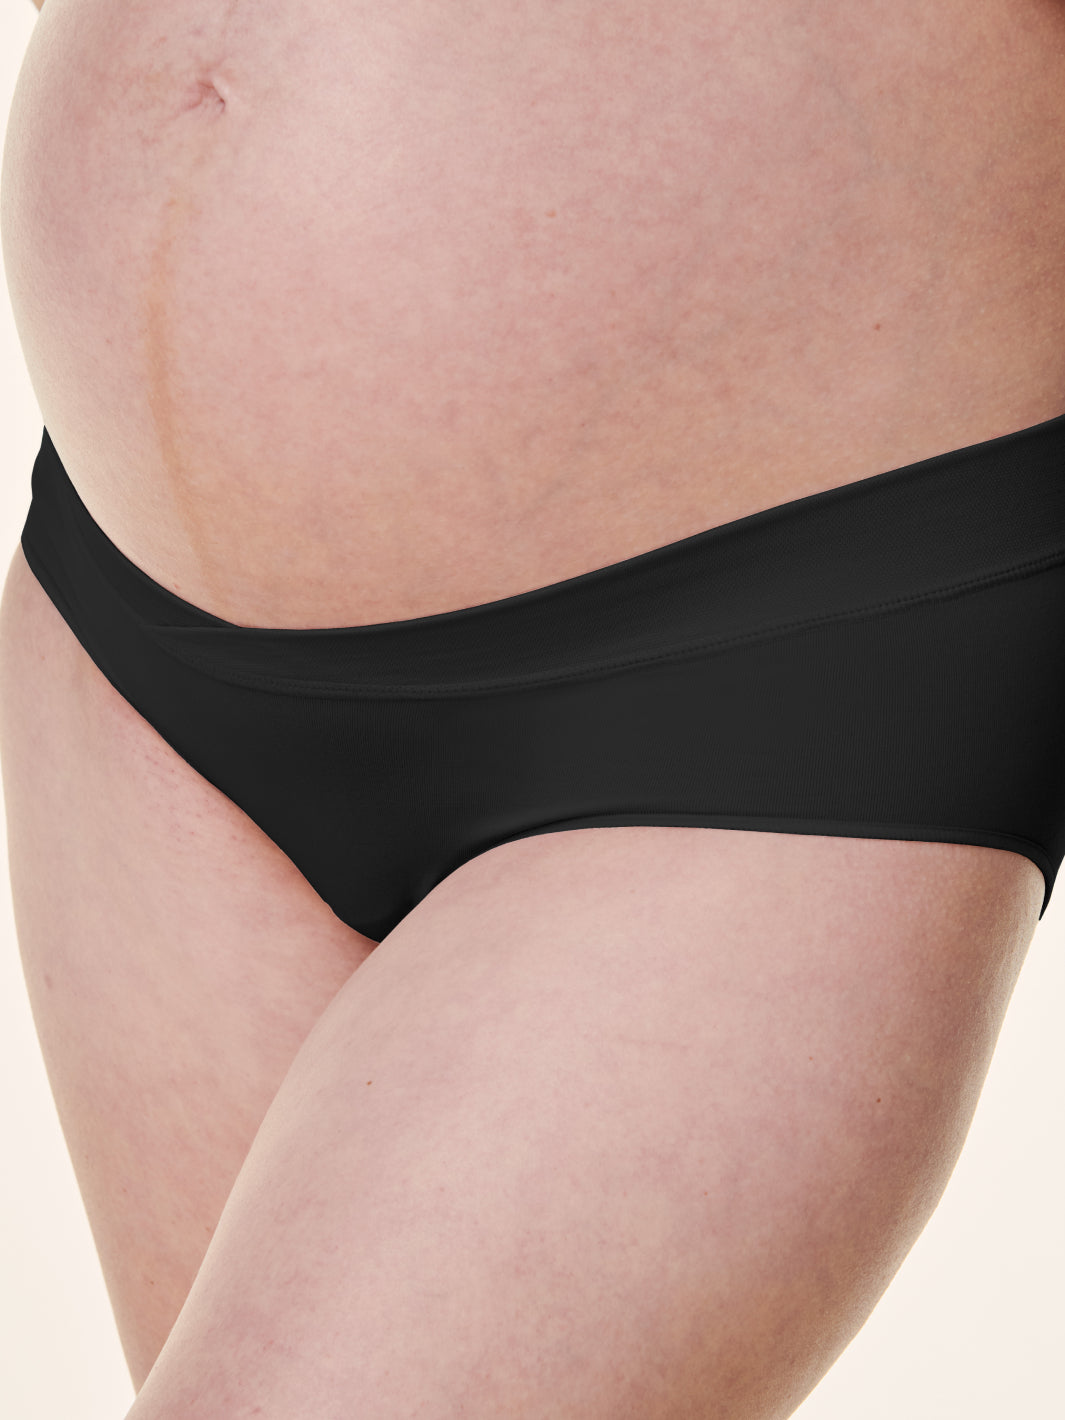 NEW! Crossover Panty – Bravado Designs Canada